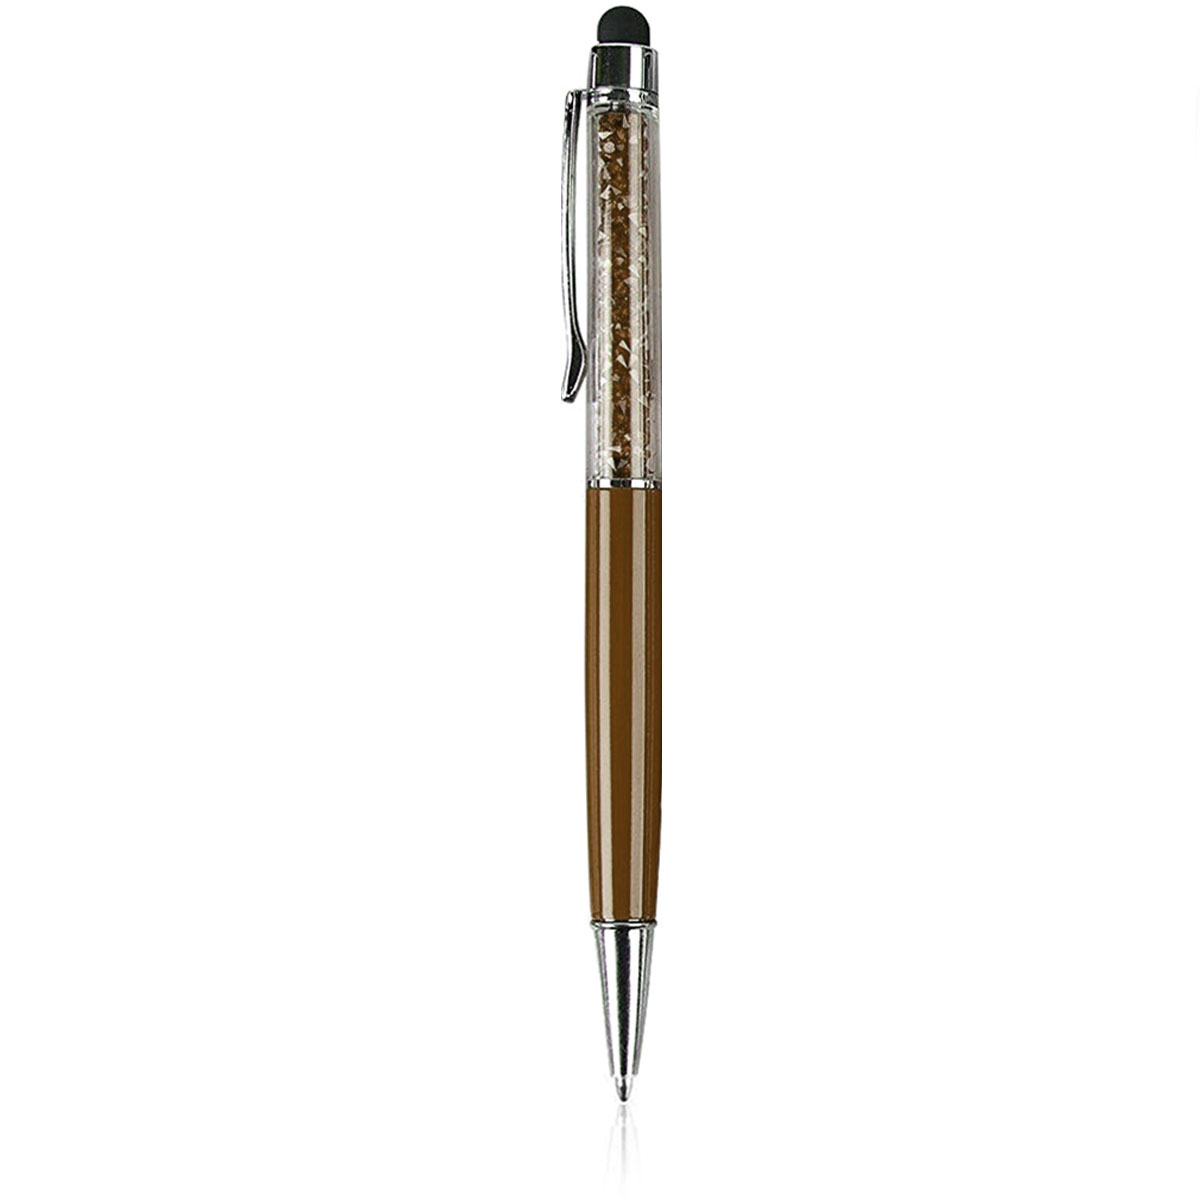 Ручка стилус для телефонов и планшетов, со стразами, цвет коричневый